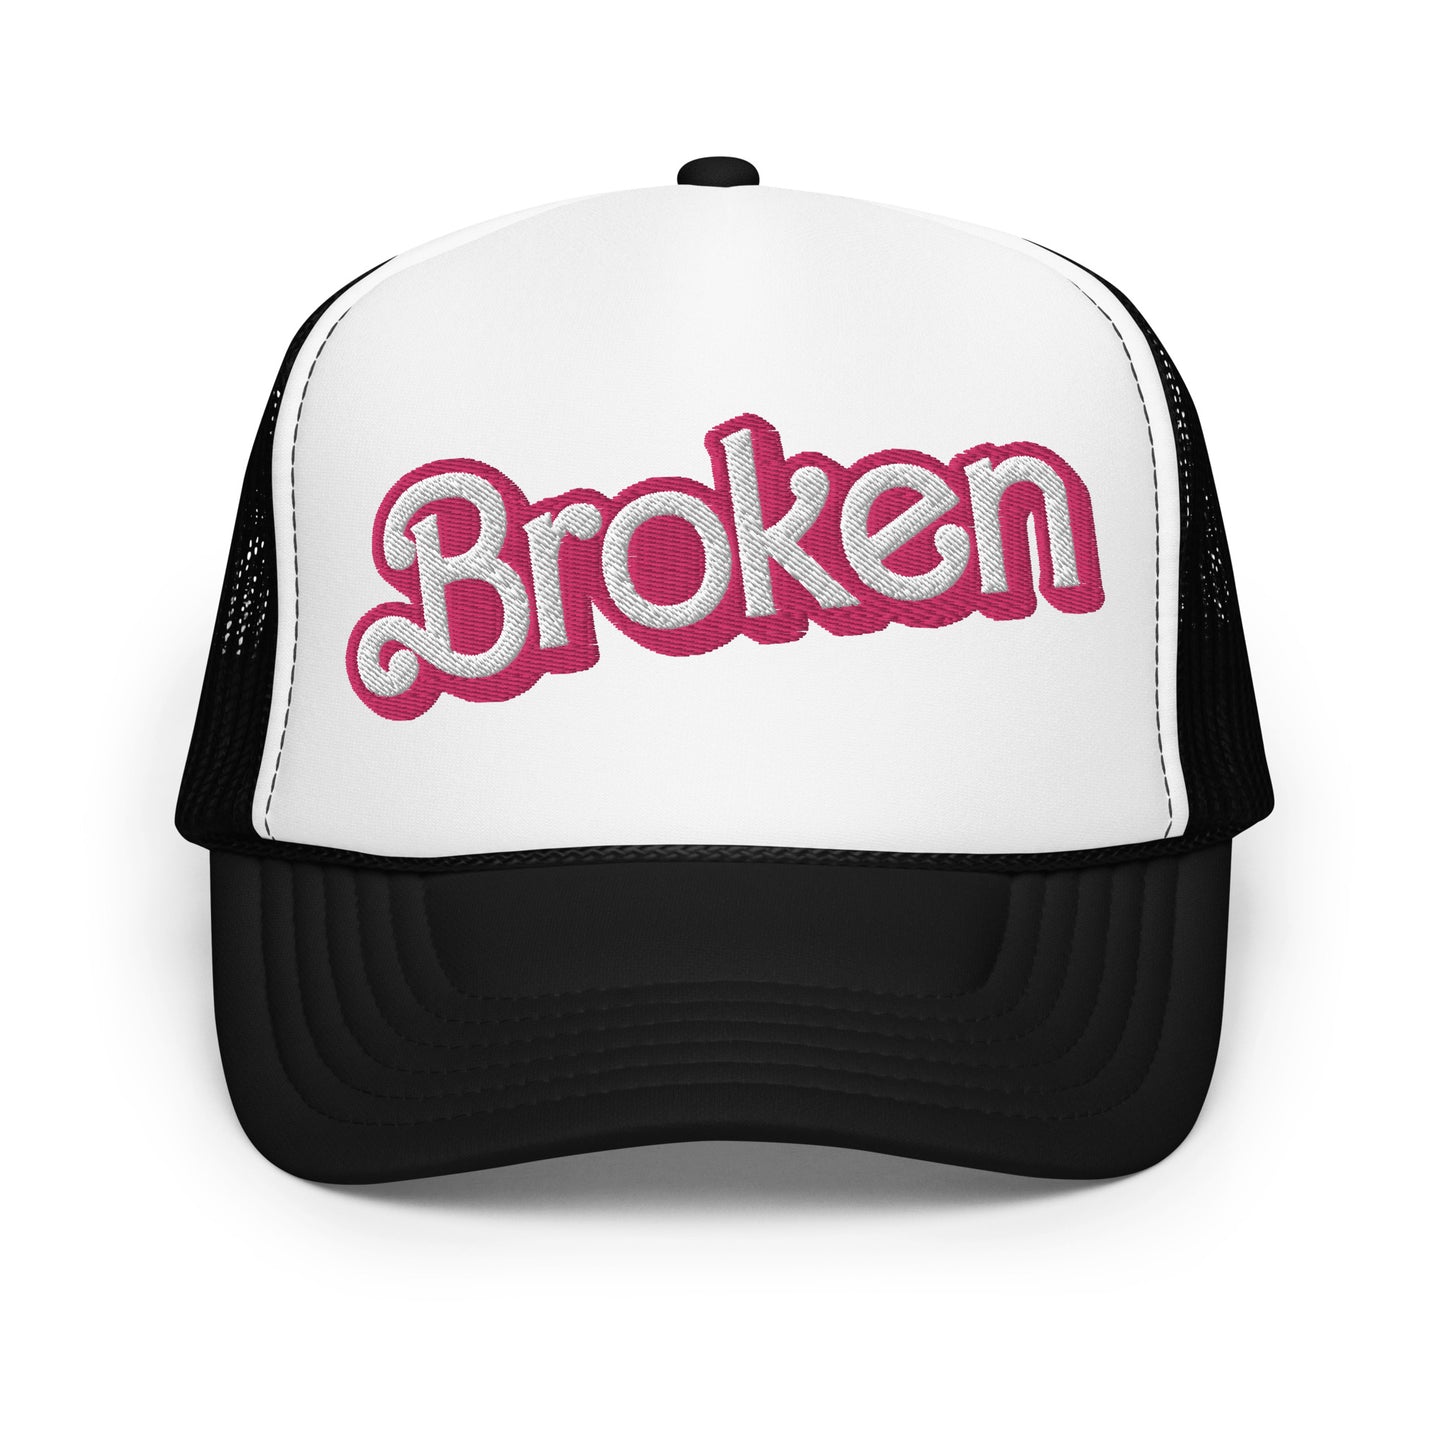 Broken Doll trucker hat